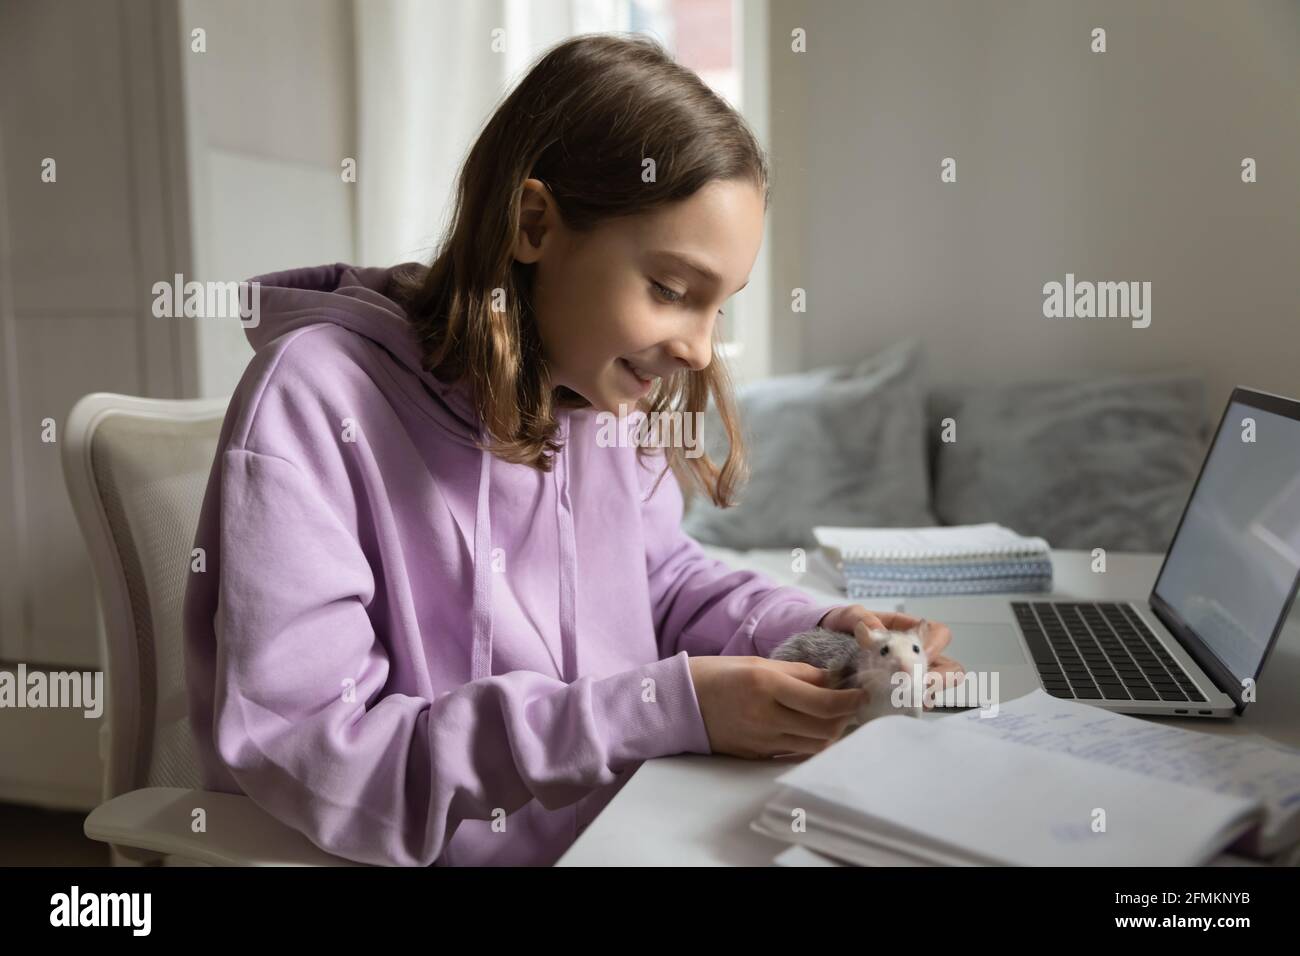 Niña adolescente sonriente jugando con animal doméstico, sentada en la mesa. Foto de stock